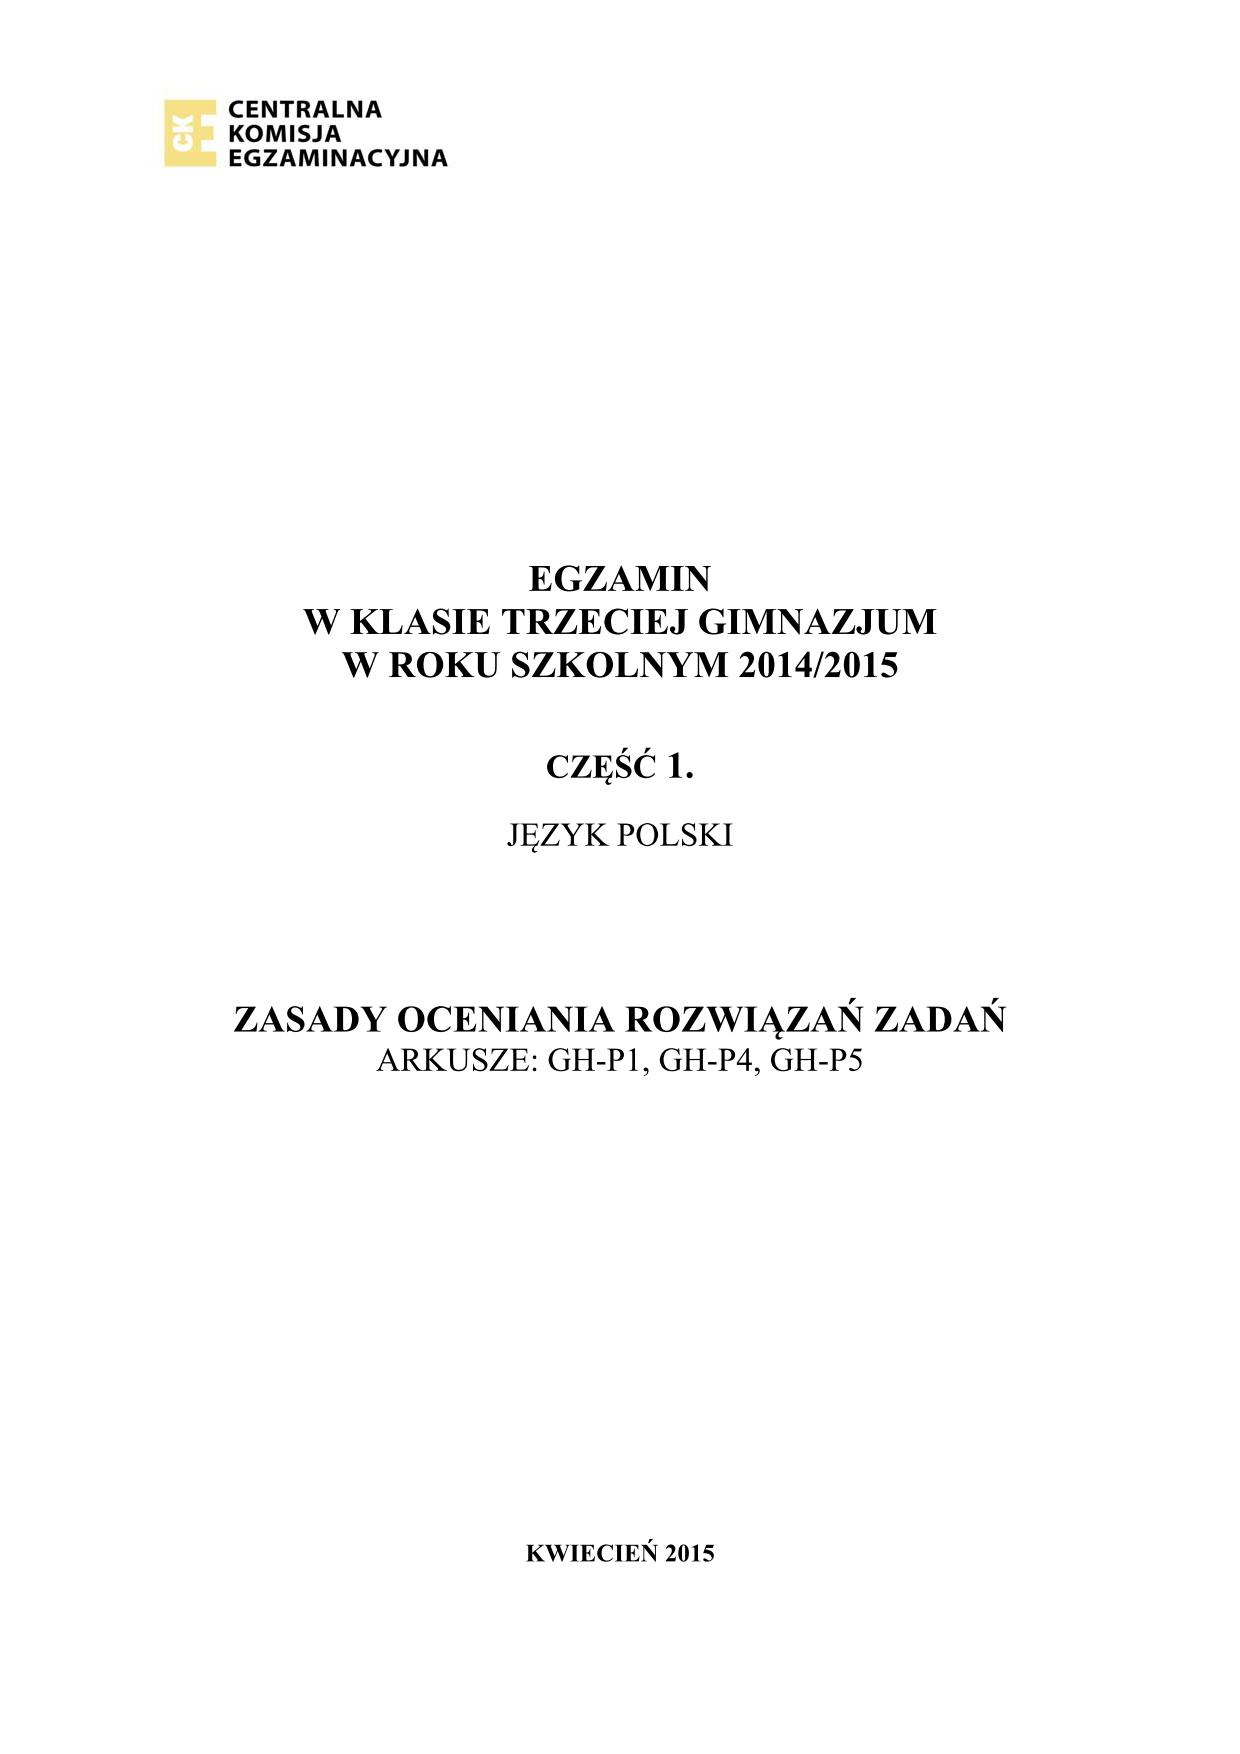 Odpowiedzi-jezyk-polski-egzamin-gimnazjalny-2015-1